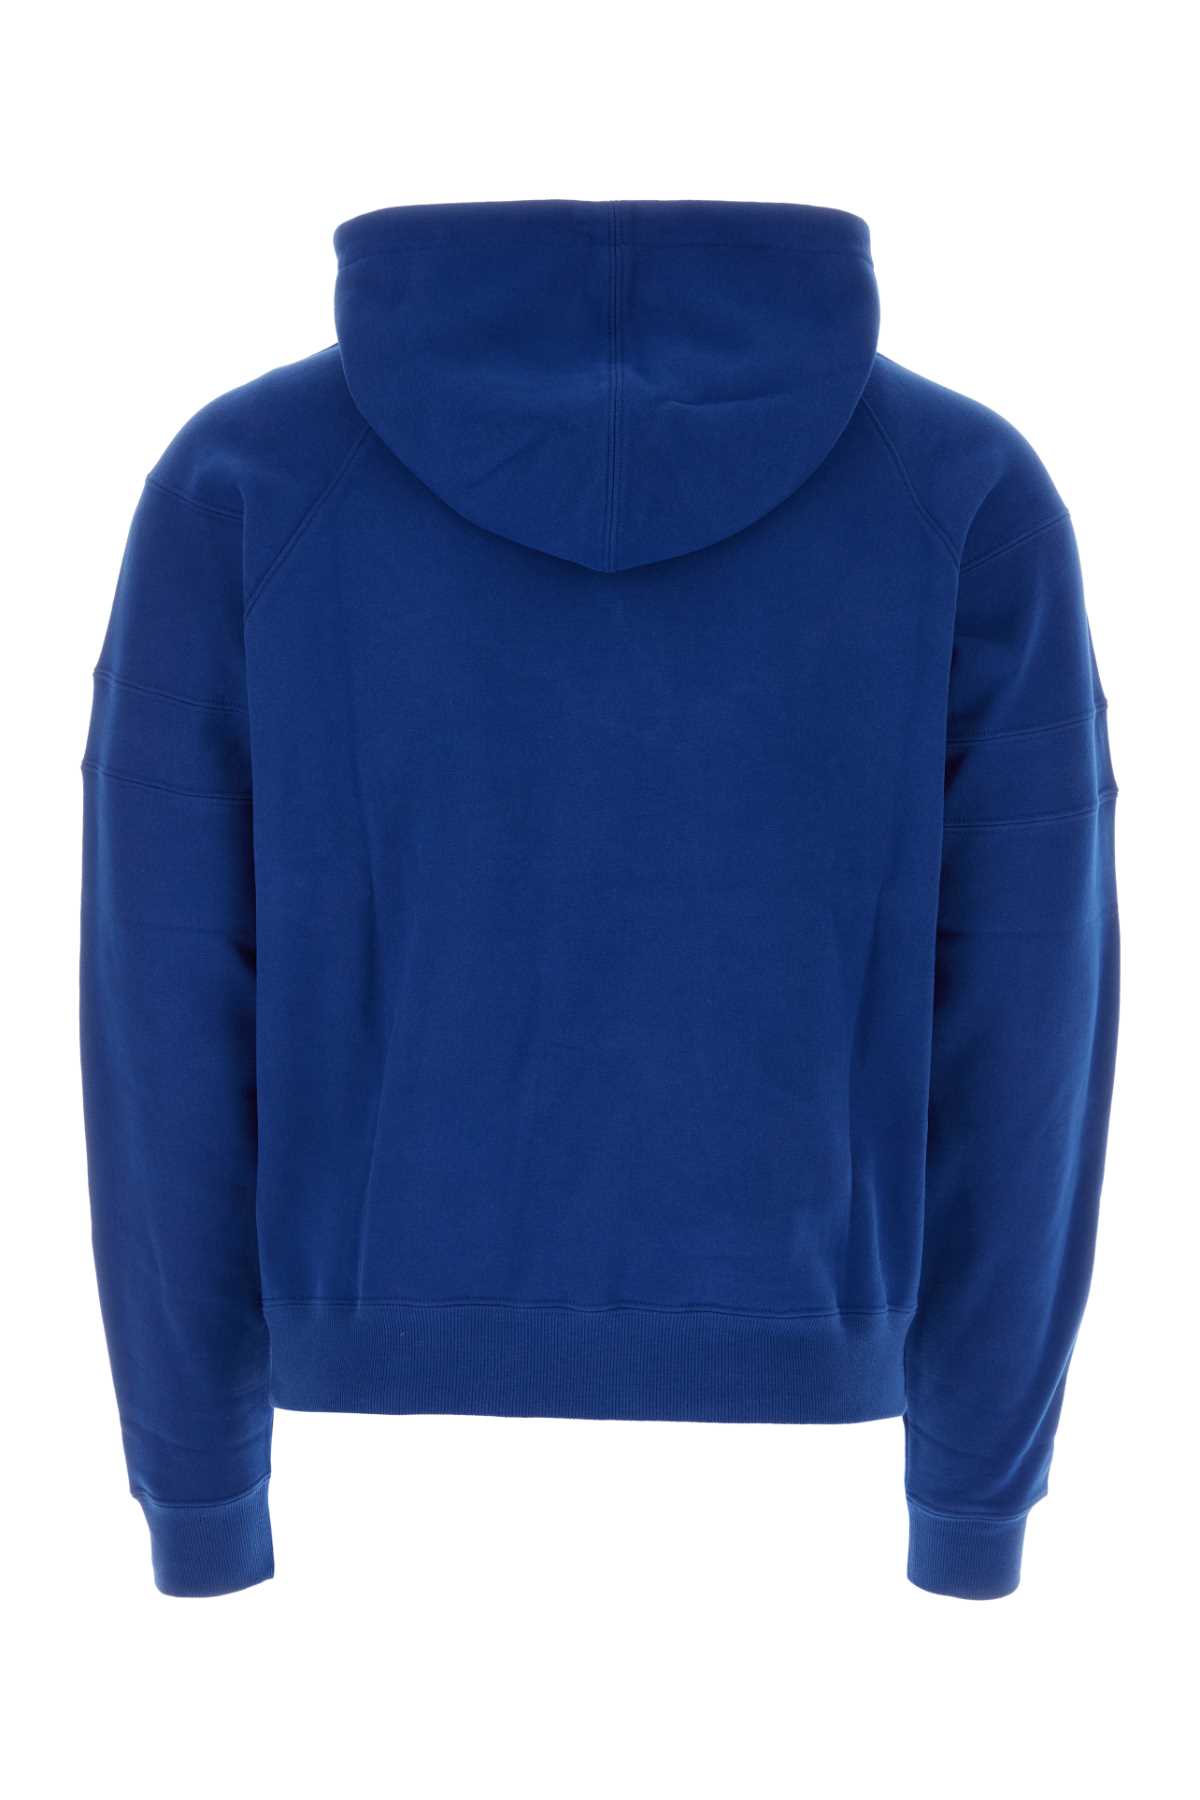 Shop Saint Laurent Electric Blue Cotton Sweatshirt In Bleu